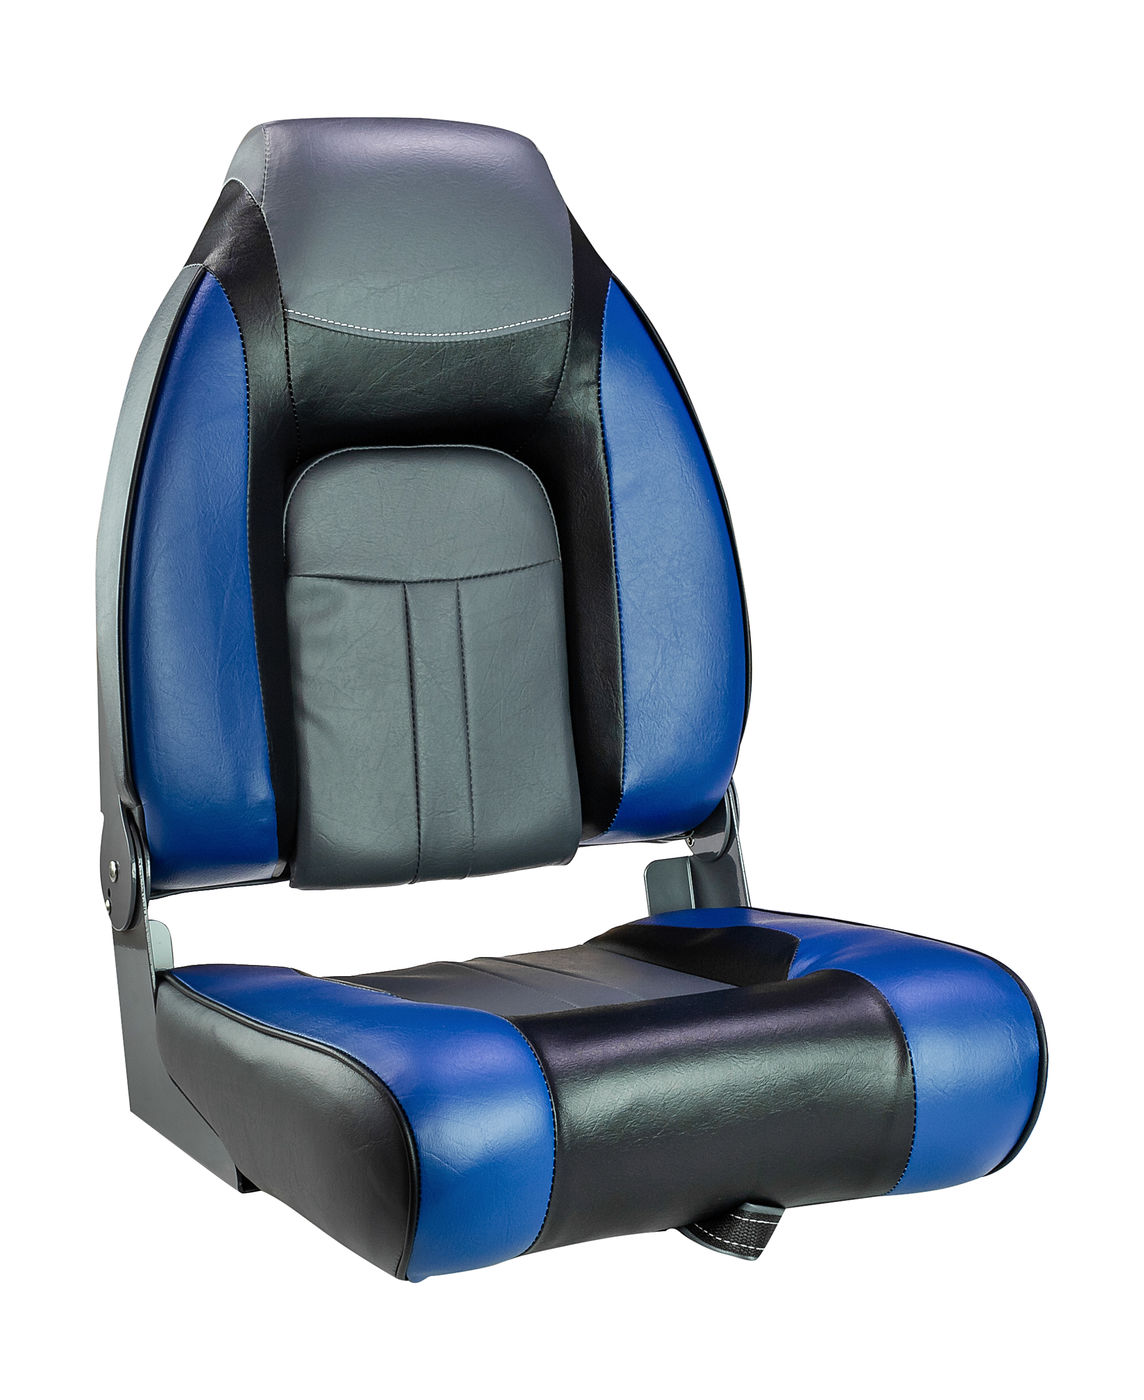 Кресло мягкое складное, обивка винил, цвет синий/угольный/черный, Marine Rocket, 889-7721